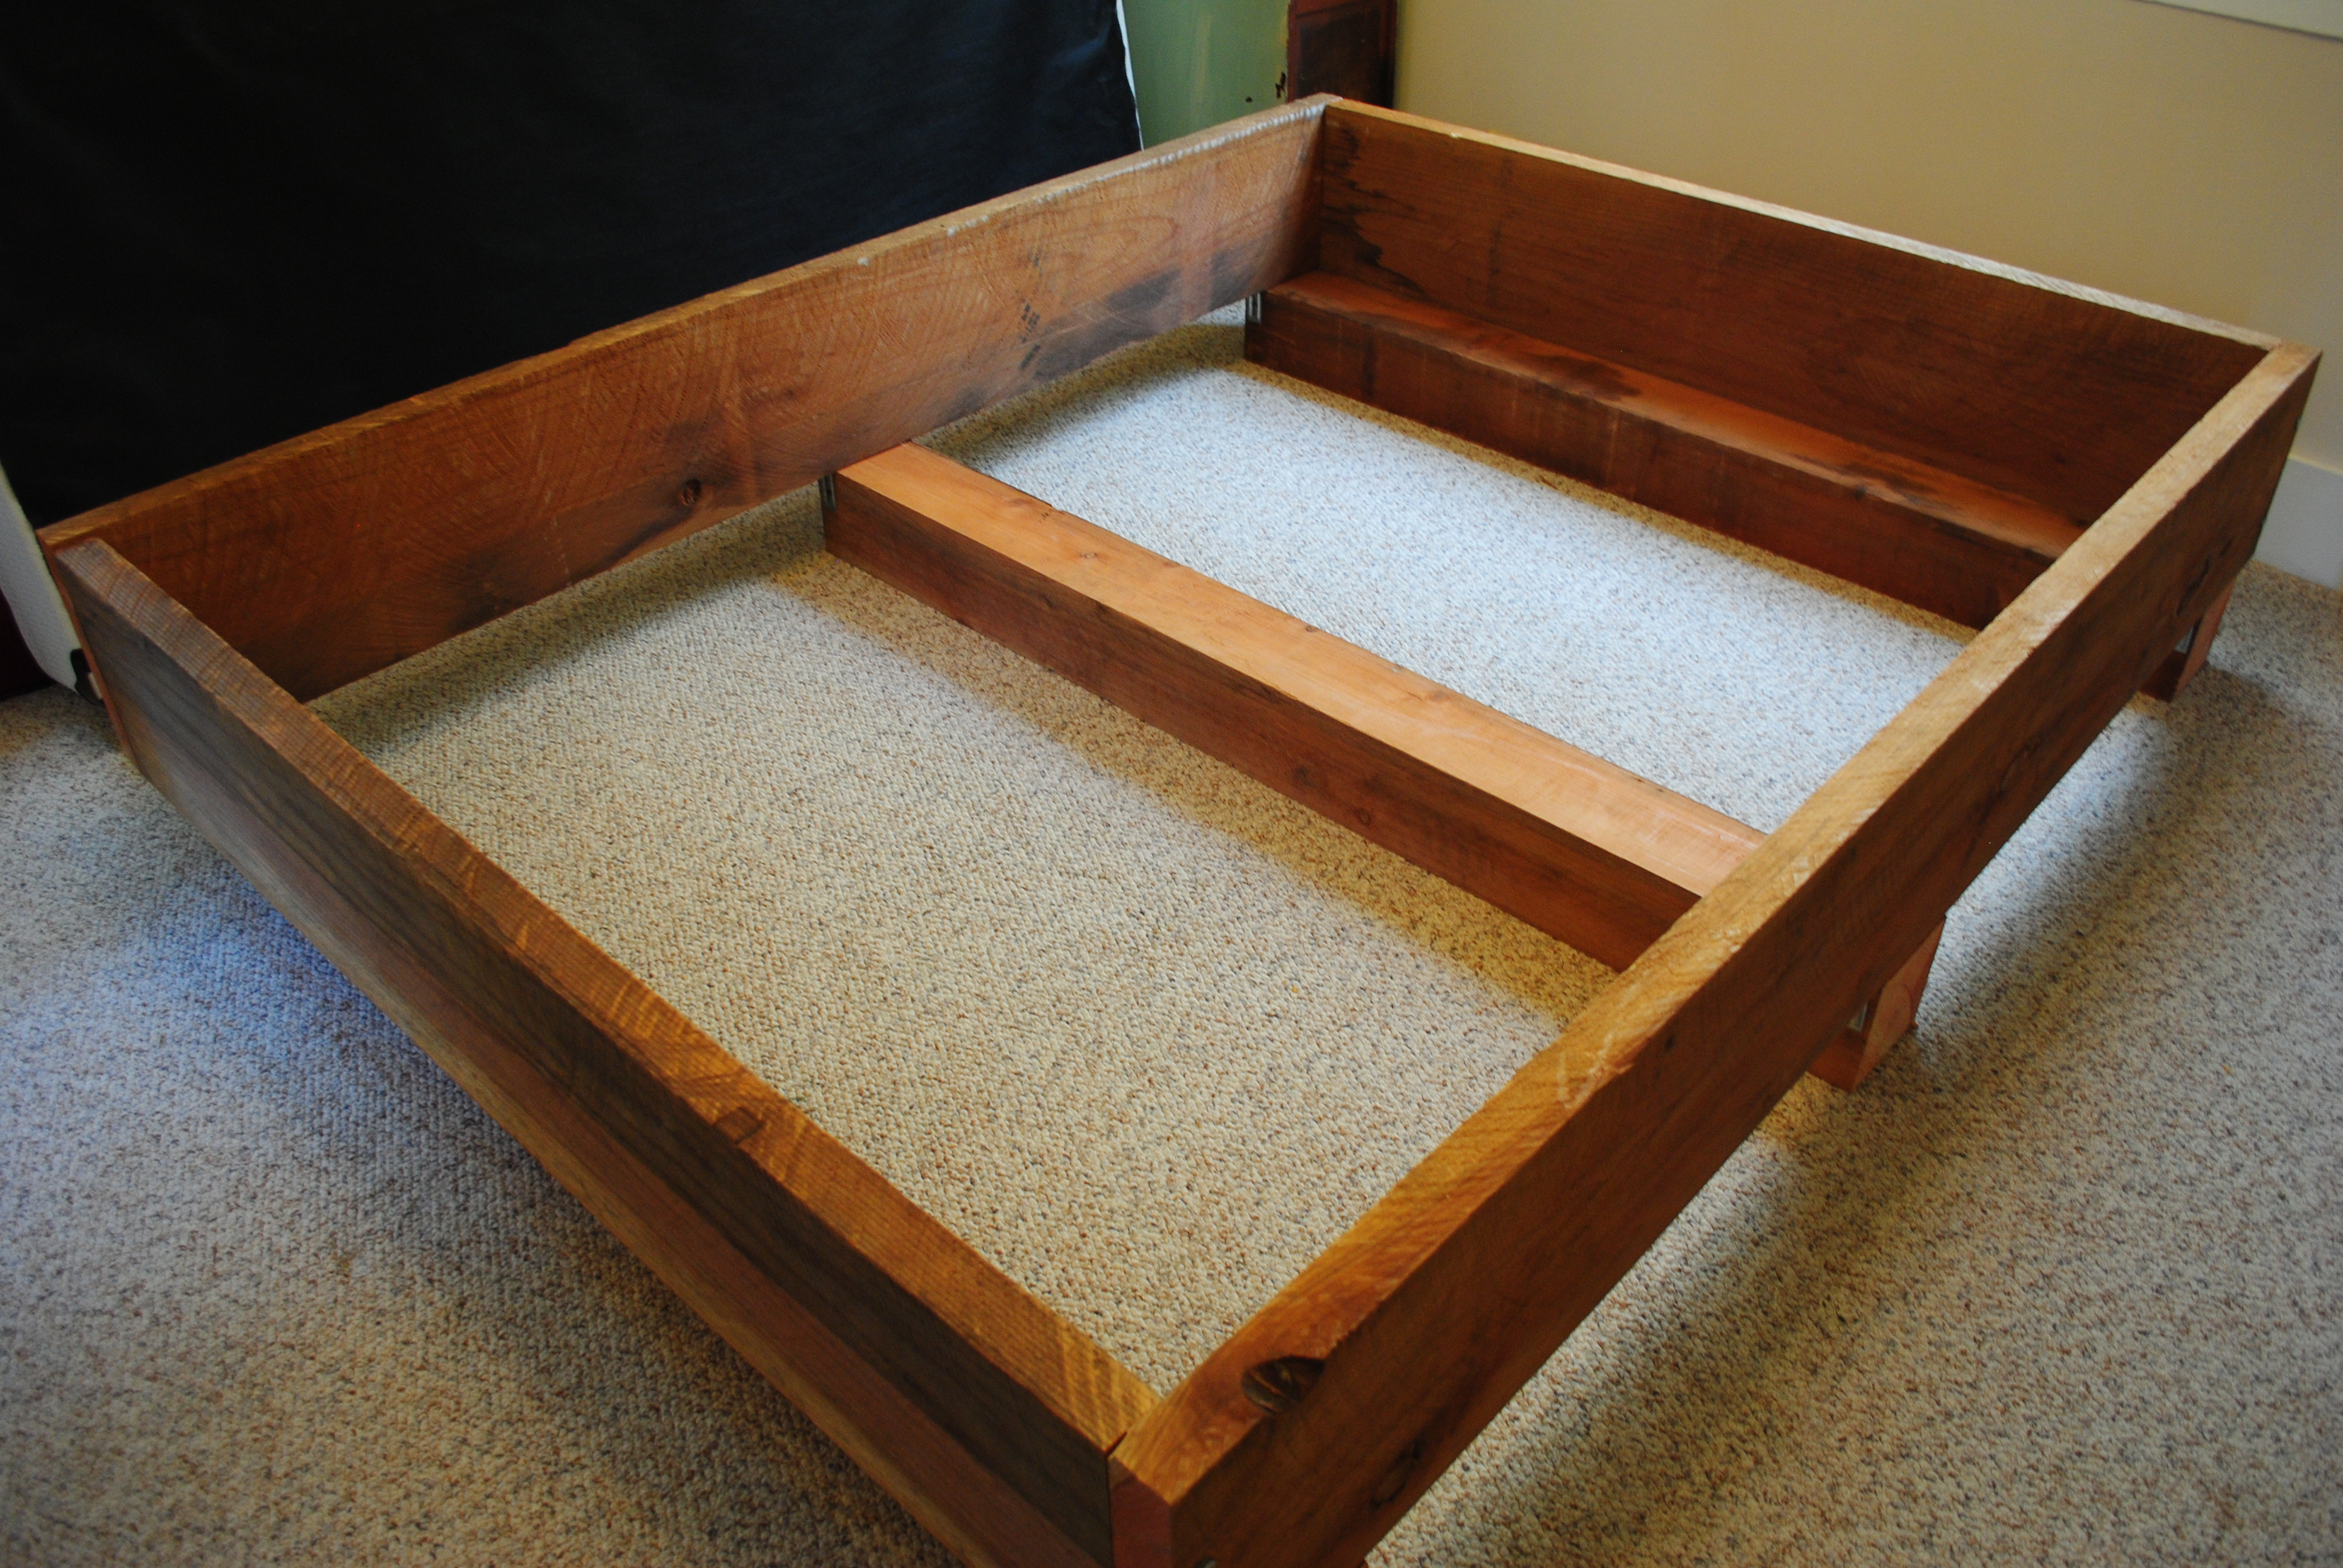 DIY Project #2: Redwood Bed Frame Transmigration